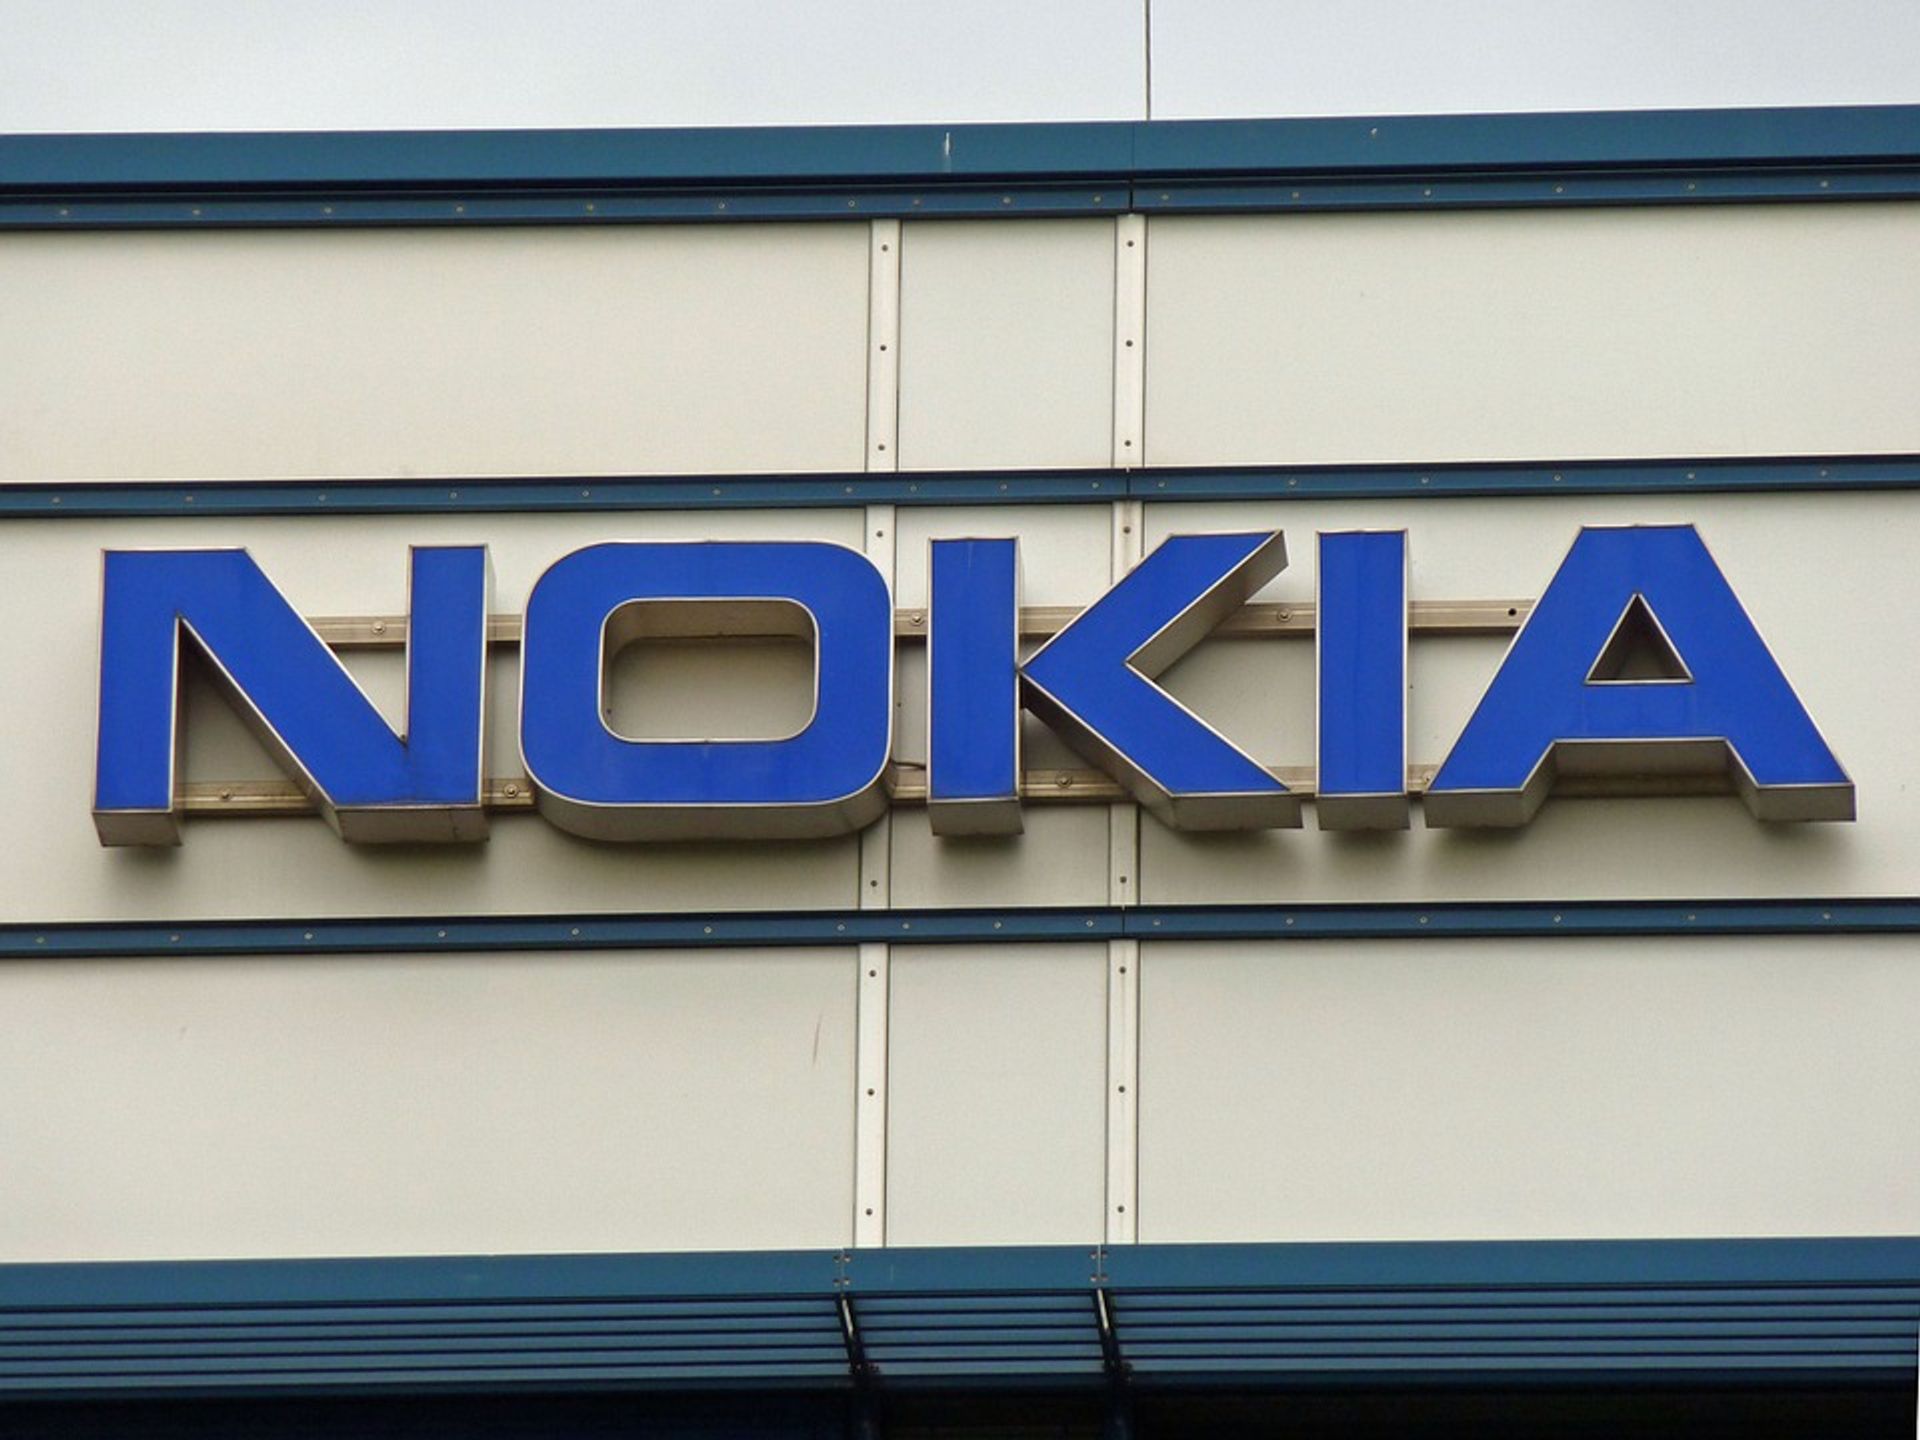  Nokia inwestuje w Łodzi